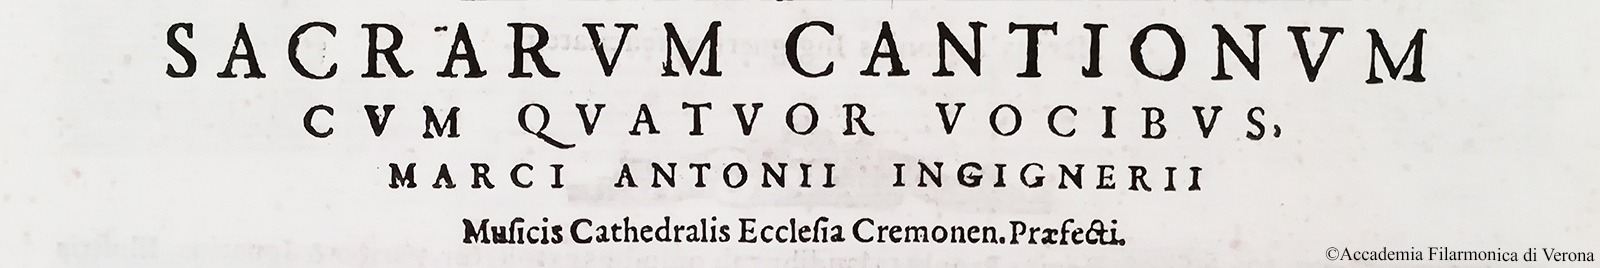 Sacrarum cantionum cum quatuor vocinus, Marci Antonii Ingignerii Musicis Cathedralis Ecclesia Cremon. Præfecti. Liber Primus, Venetijs, Apud Angelum Gardanum, 1586